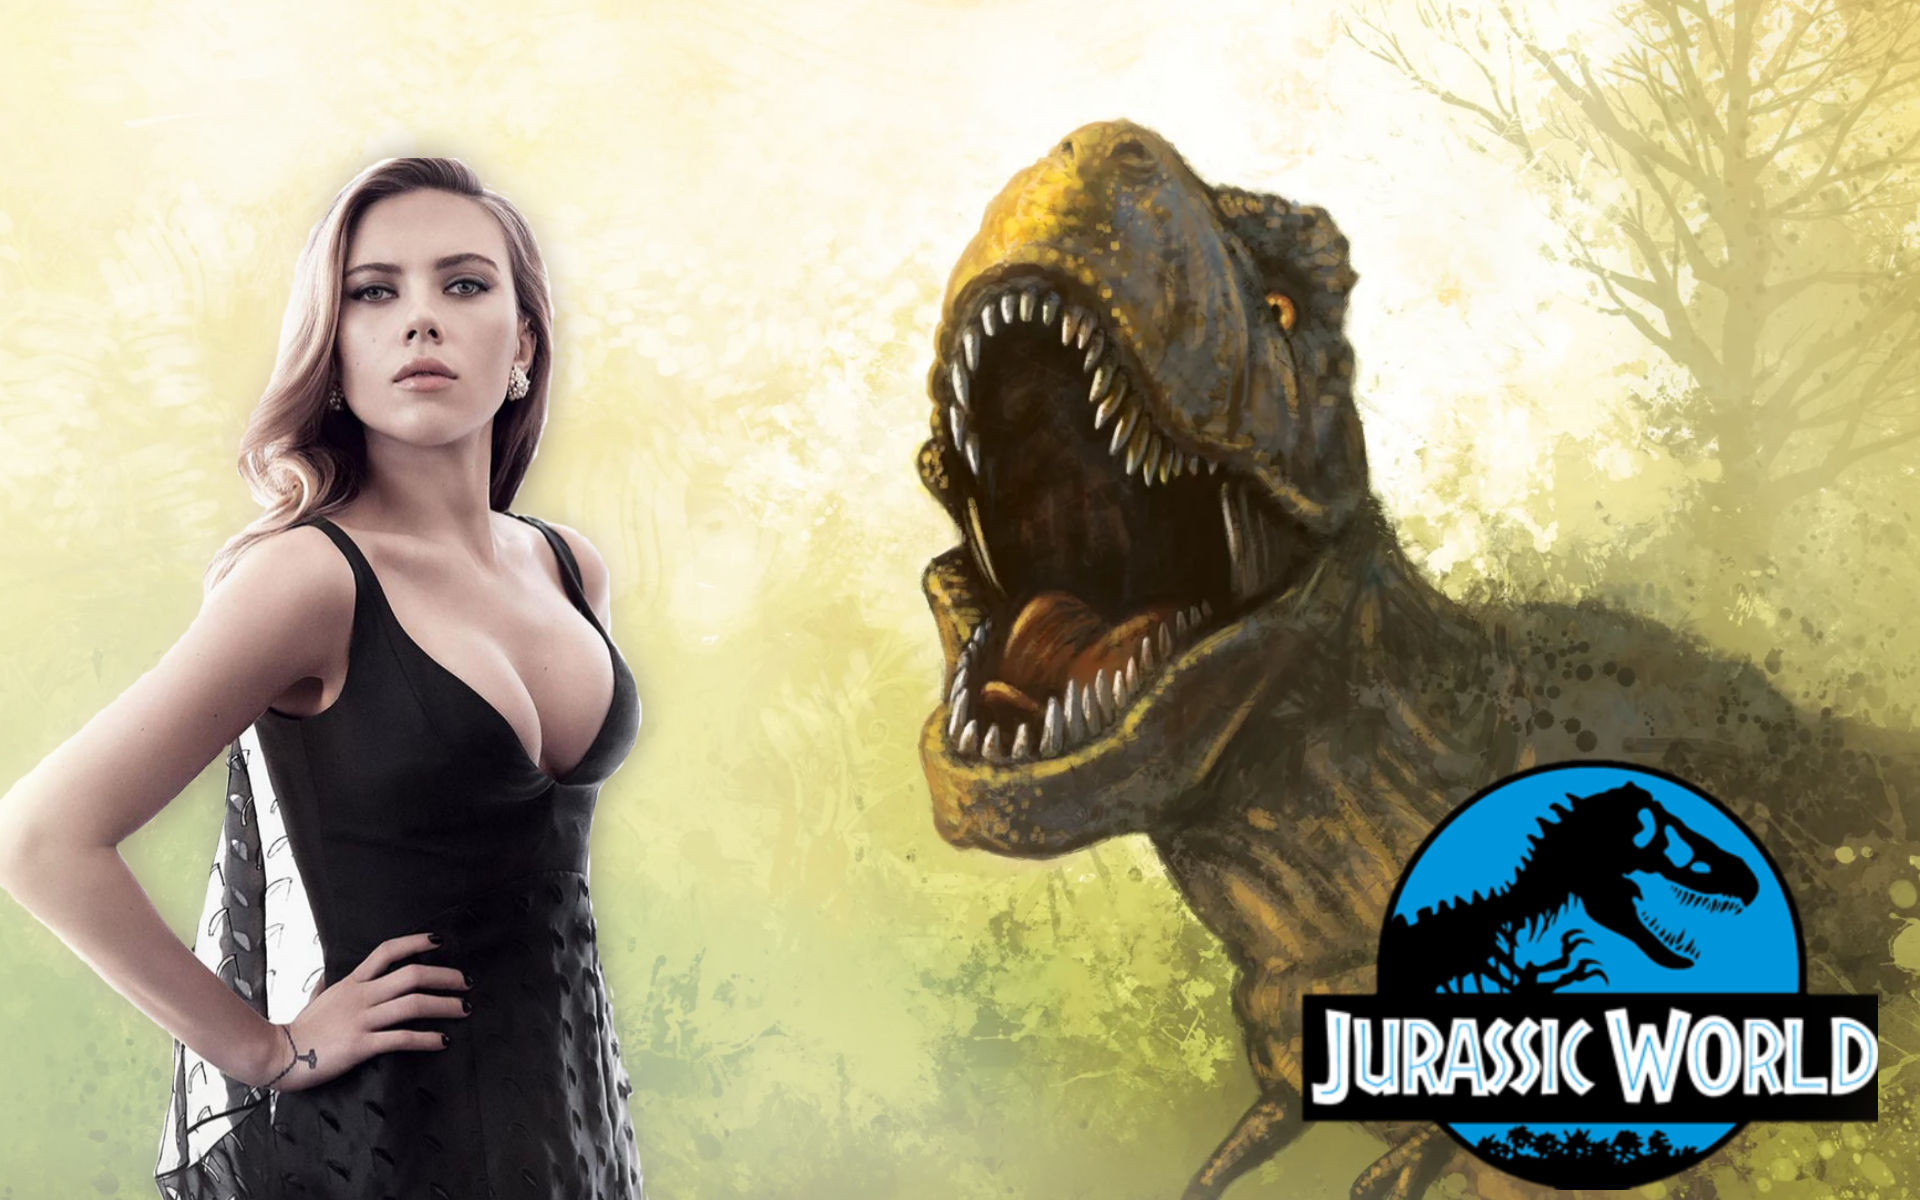 Un vedova nera nel parco di Jurassic World: Scarlett Johansson star del reboot giurassico